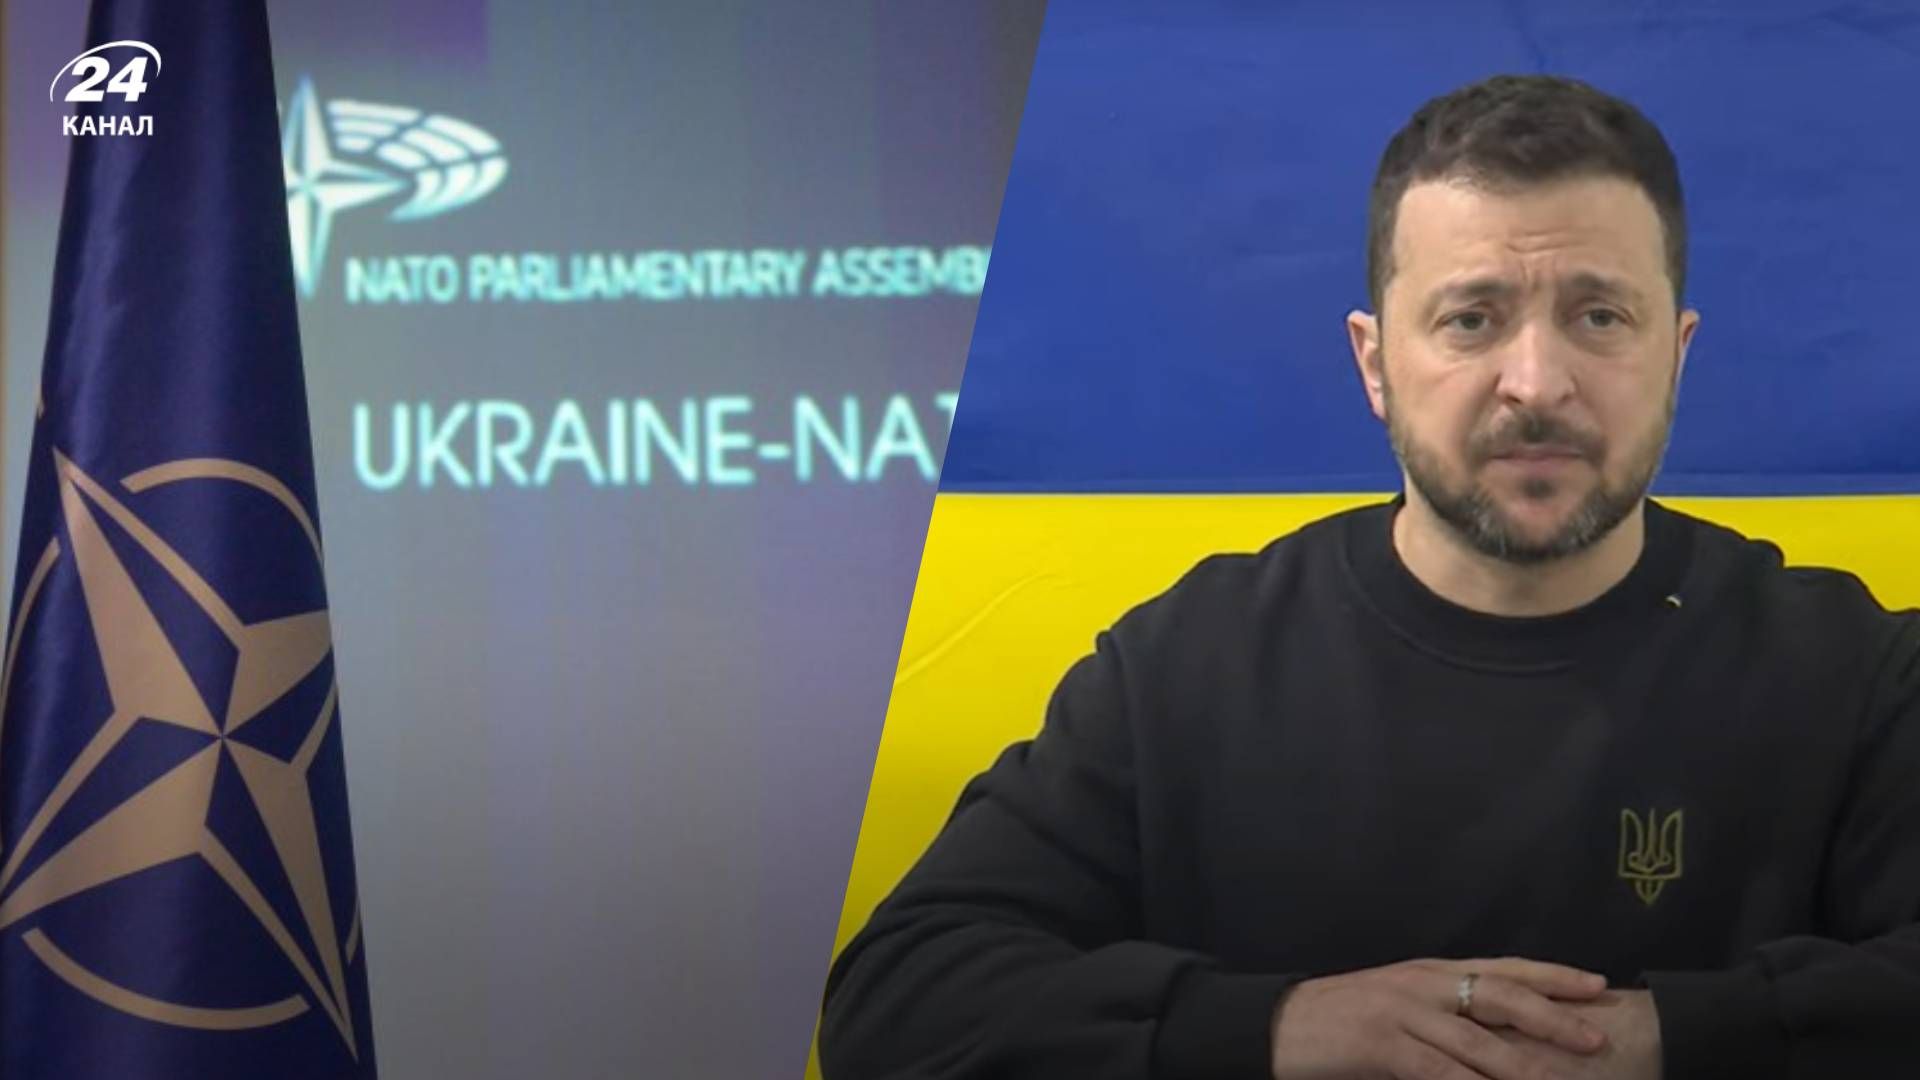 Зеленський виступив на засіданні Ради Україна - НАТо